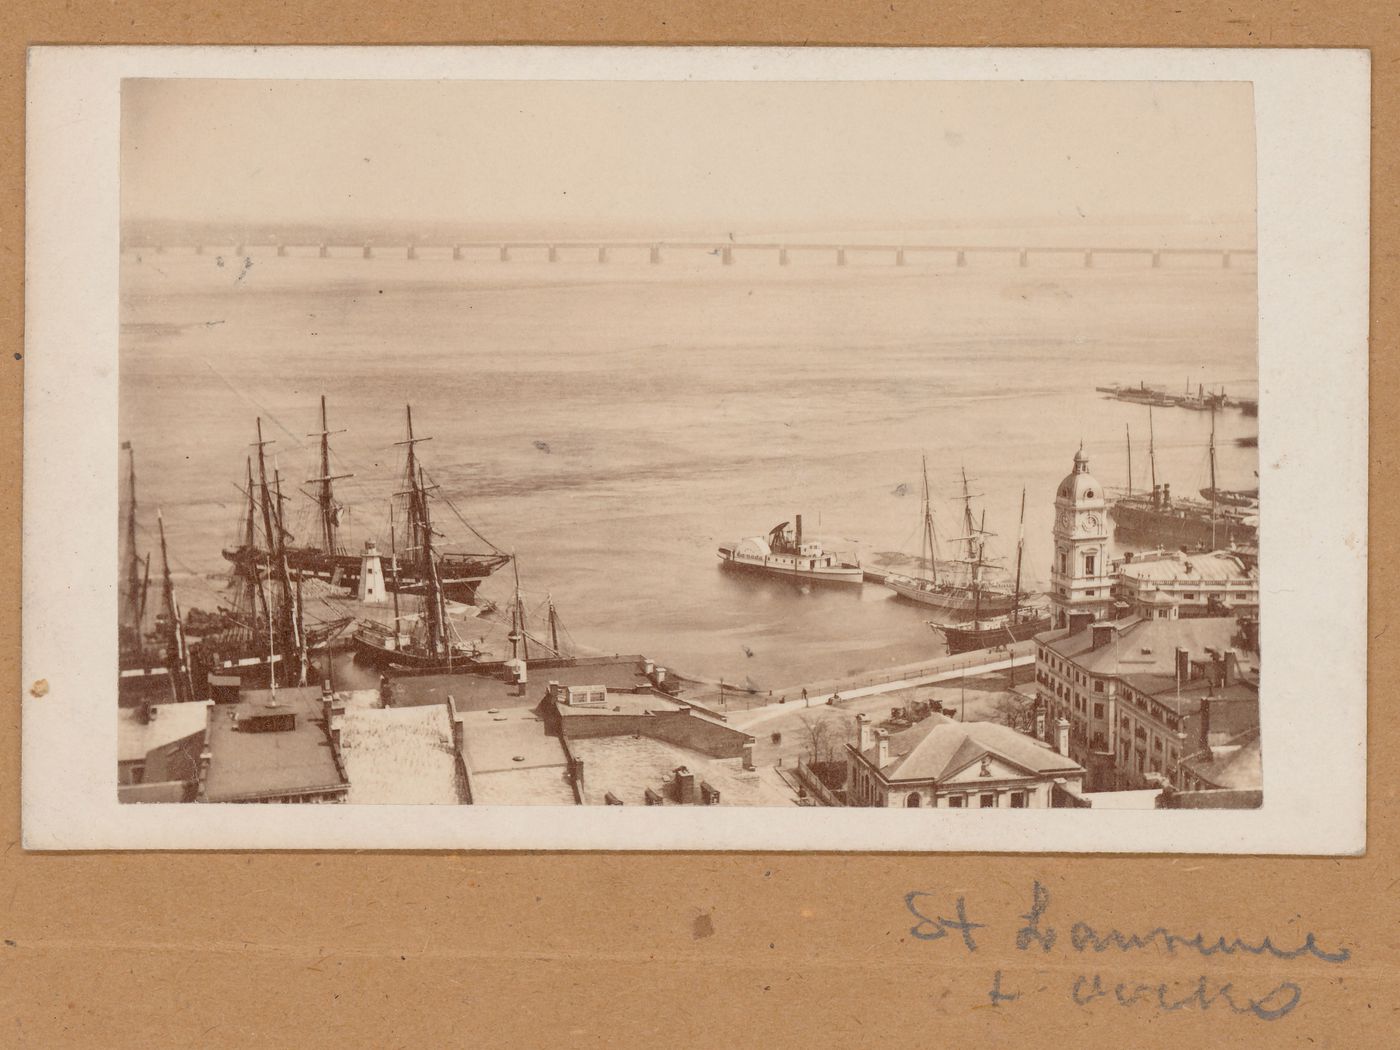 View of the Port of Montréal showing a dockyard, ships, the Maison de la Douane and the Édifice de la compagnie d'assurances Royale (now demolished) with Victoria Bridge in the background, Canada (now Québec, Canada)